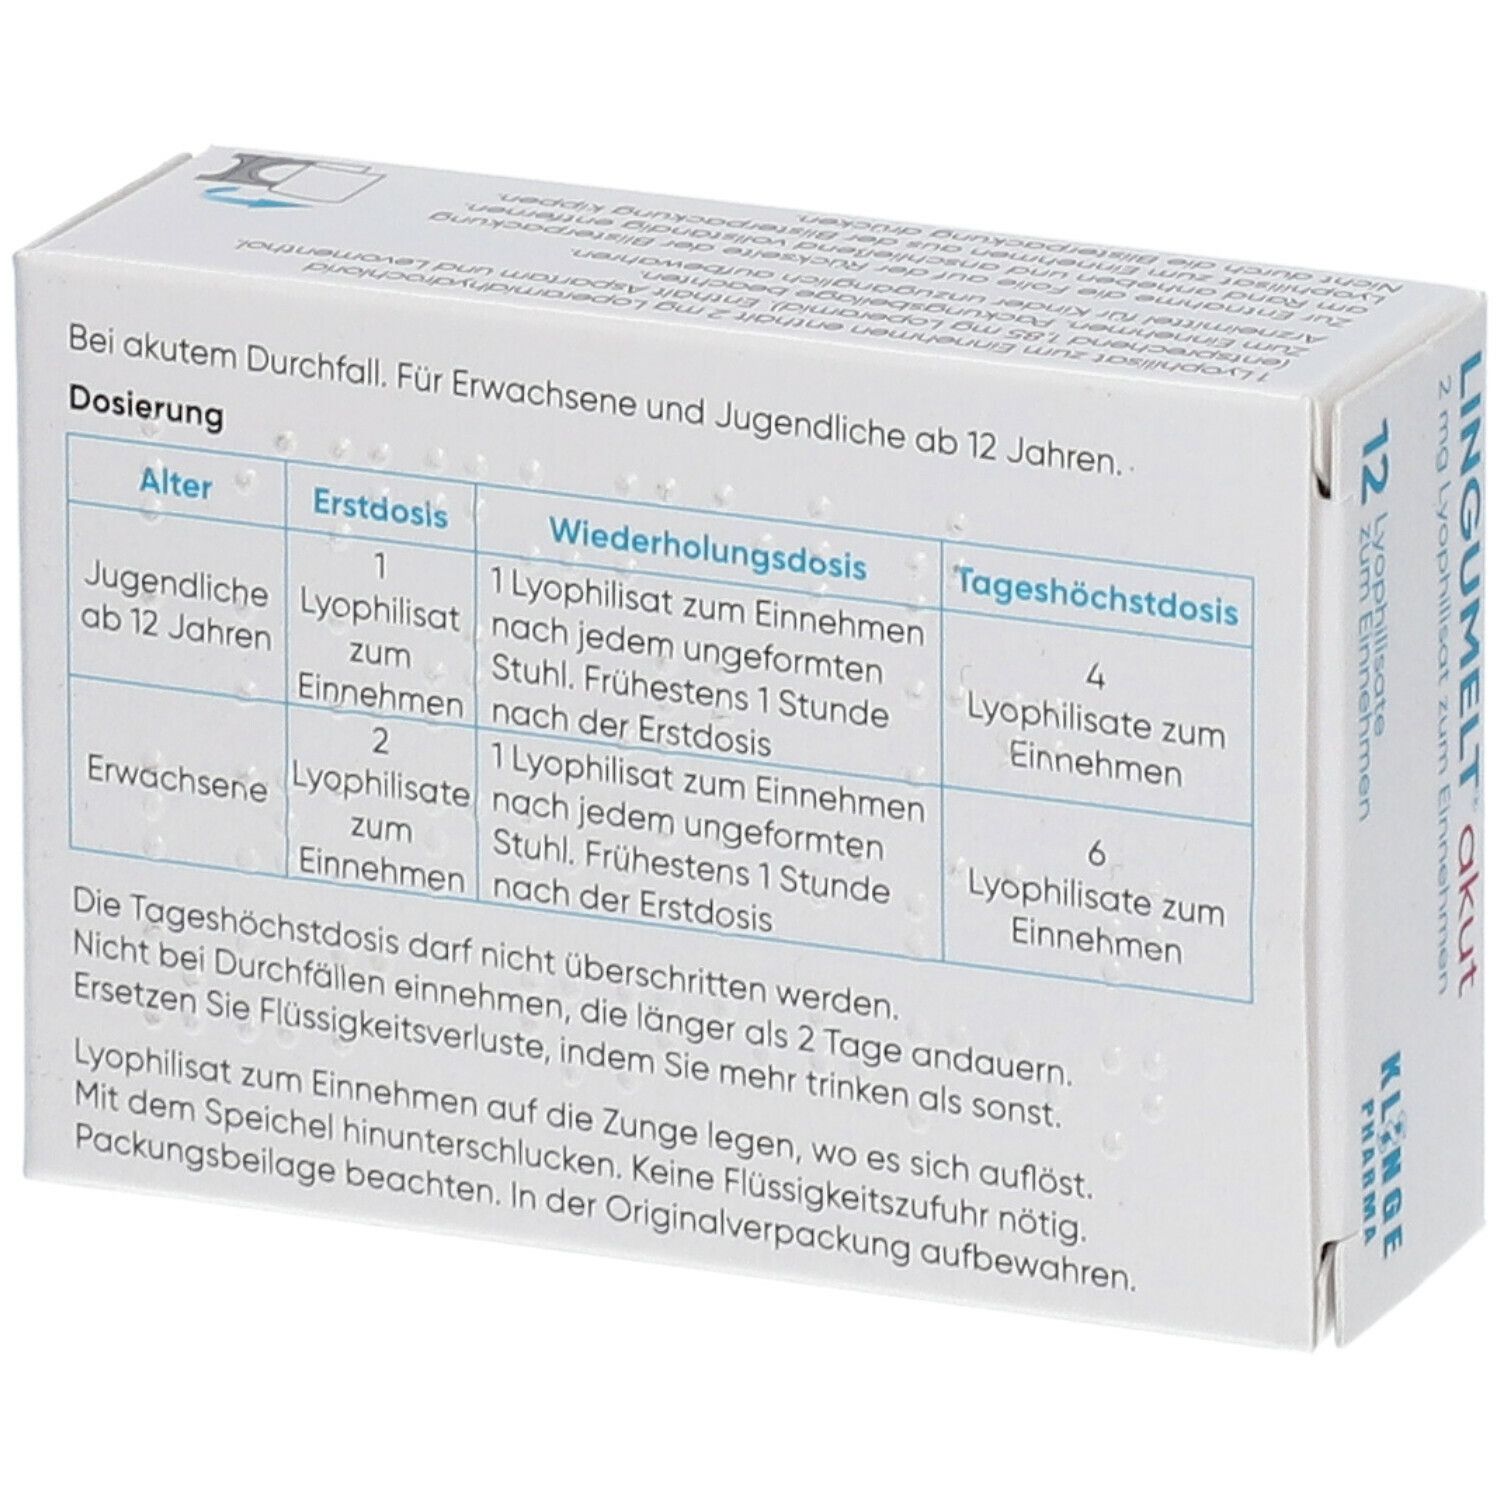 Lingumelt® akut 2 mg Lyophilisat zum Einnehmen